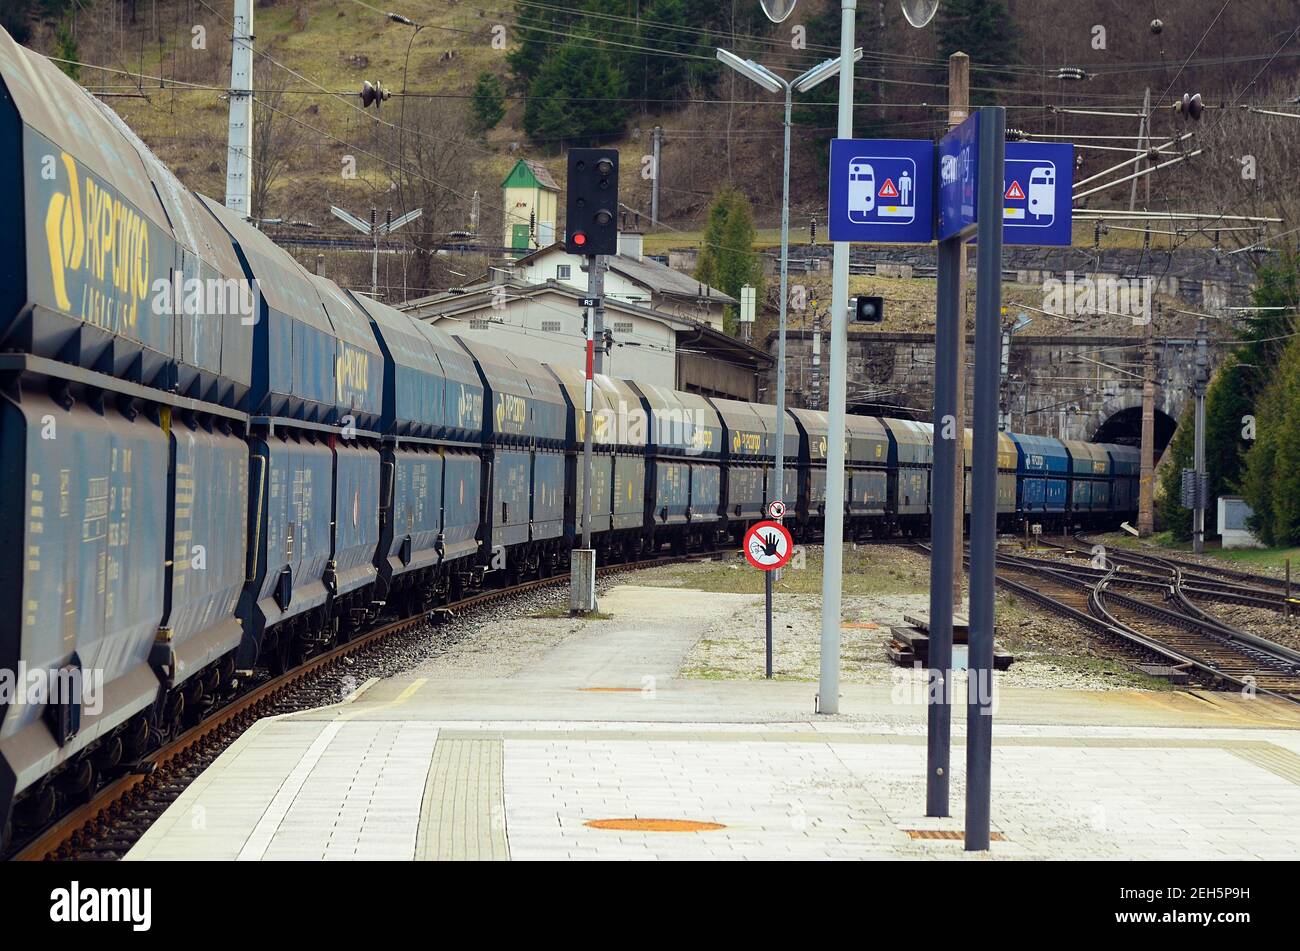 Semmering, Österreich - 22. März 2014: Güterverkehr auf der Semmering-Bahn - älteste Bergbahn Europas und UNESCO-Weltkulturerbe Stockfoto